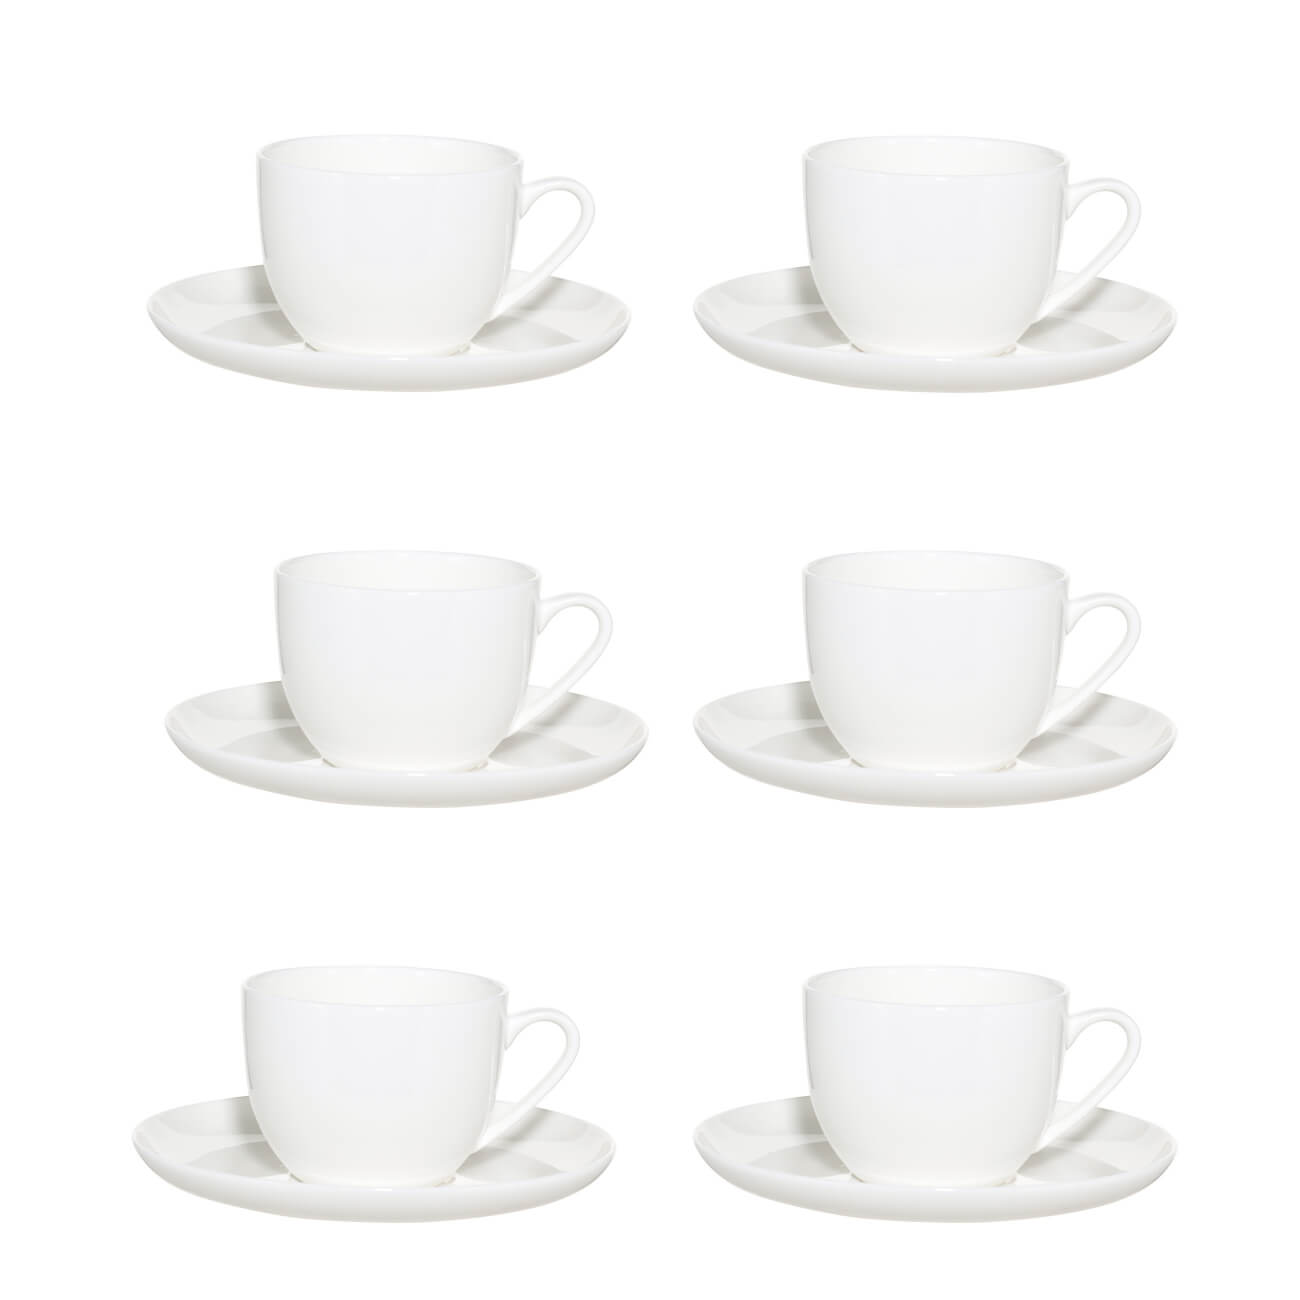 Пара чайная, 6 перс, 12 пр, 250 мл, фарфор F, белая, Ideal white пара чайная чашка блюдце 240 мл tudor tu9999 3